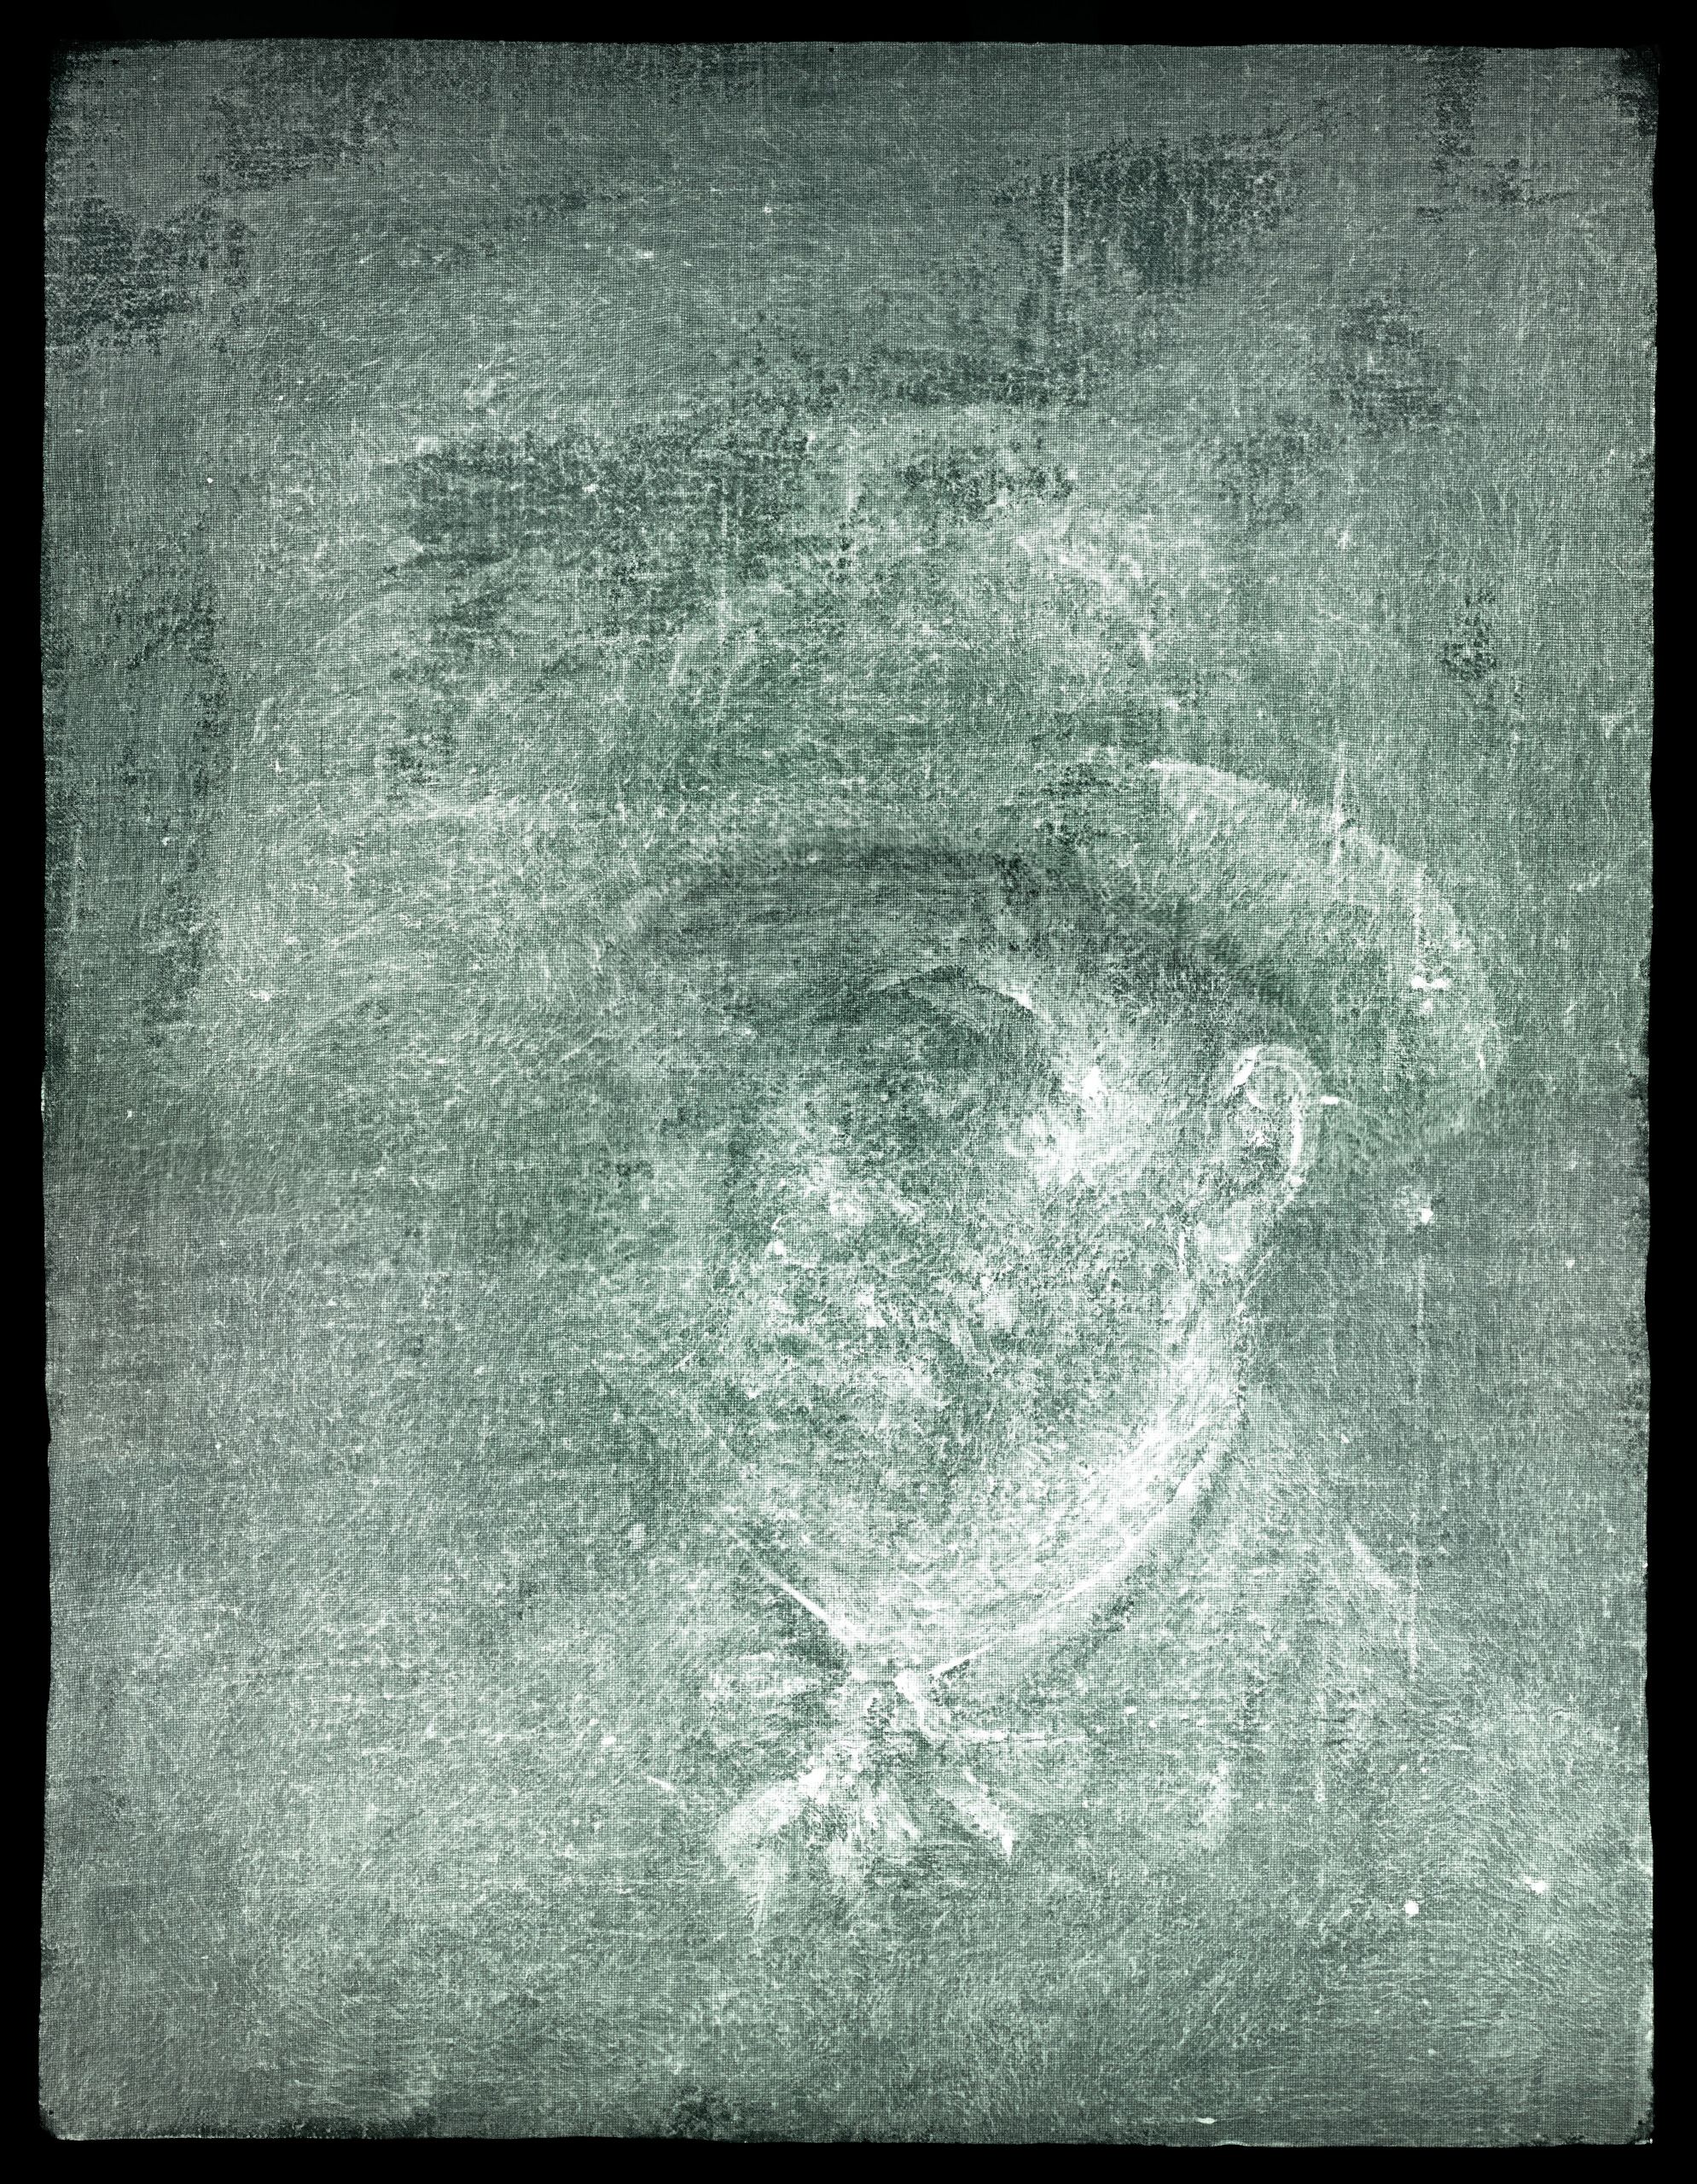 Image radiographique censée montrer un autoportrait de Vincent Van Gogh 